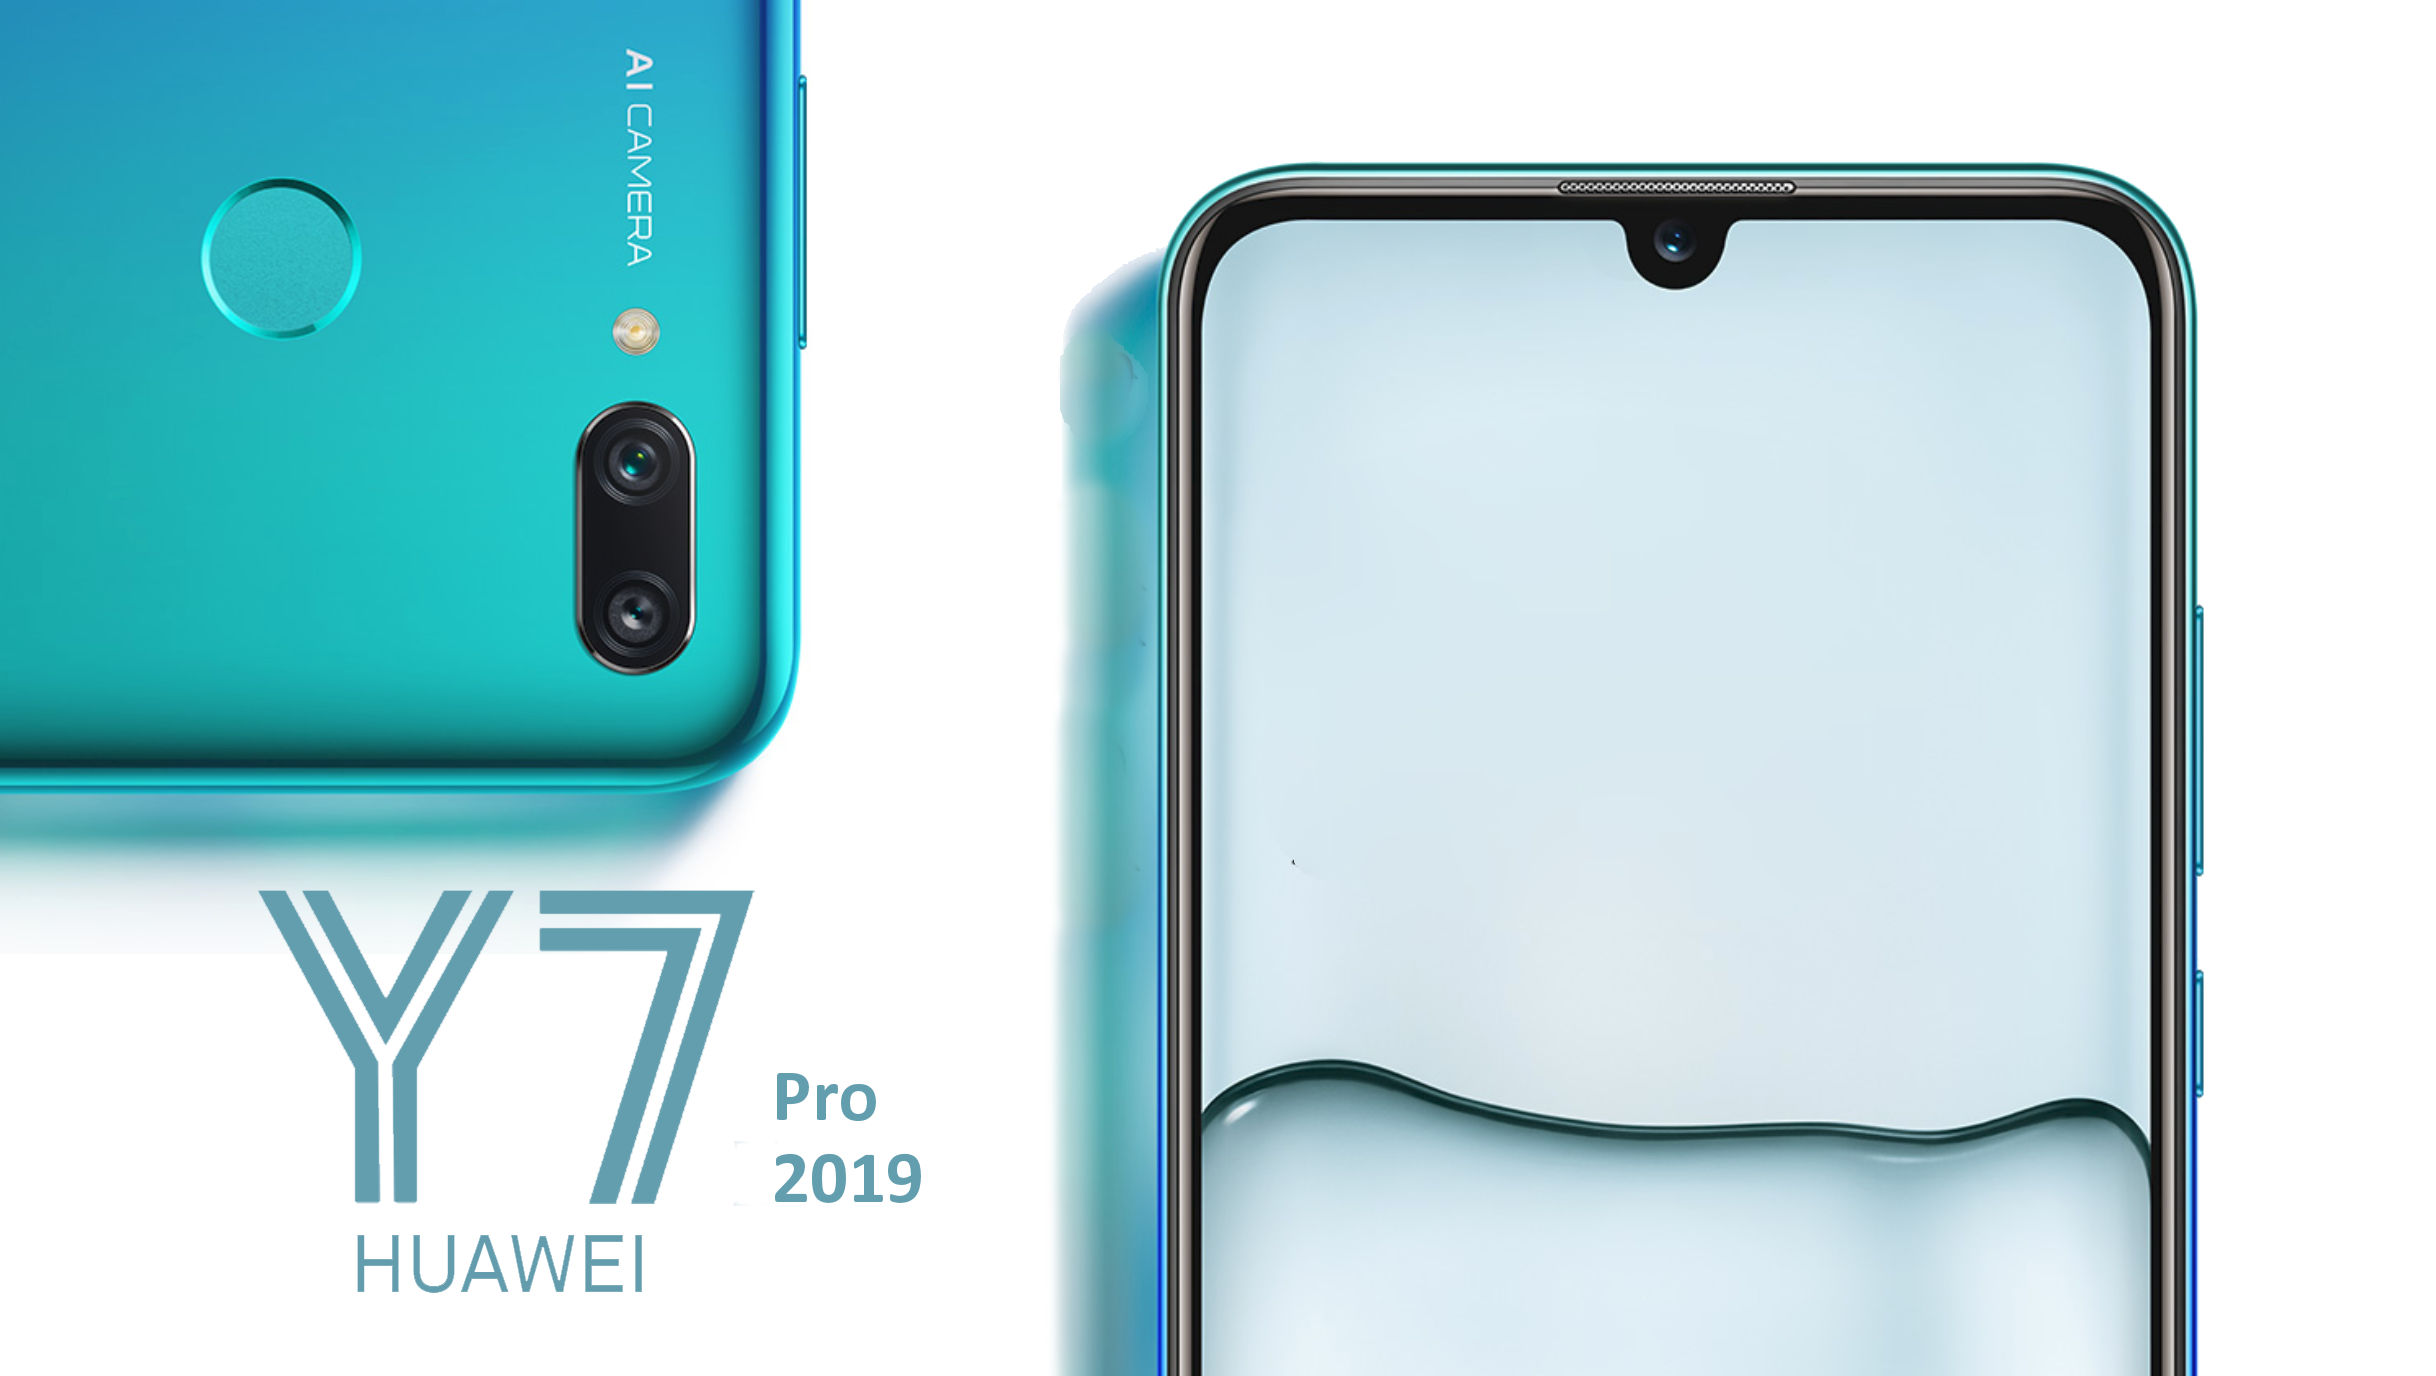 เปิดตัว Huawei Y7 Pro (2019) ใช้ Snapdragon 450 จอใหญ่ แบตอึด ราคาราวๆ 5,500 บาท